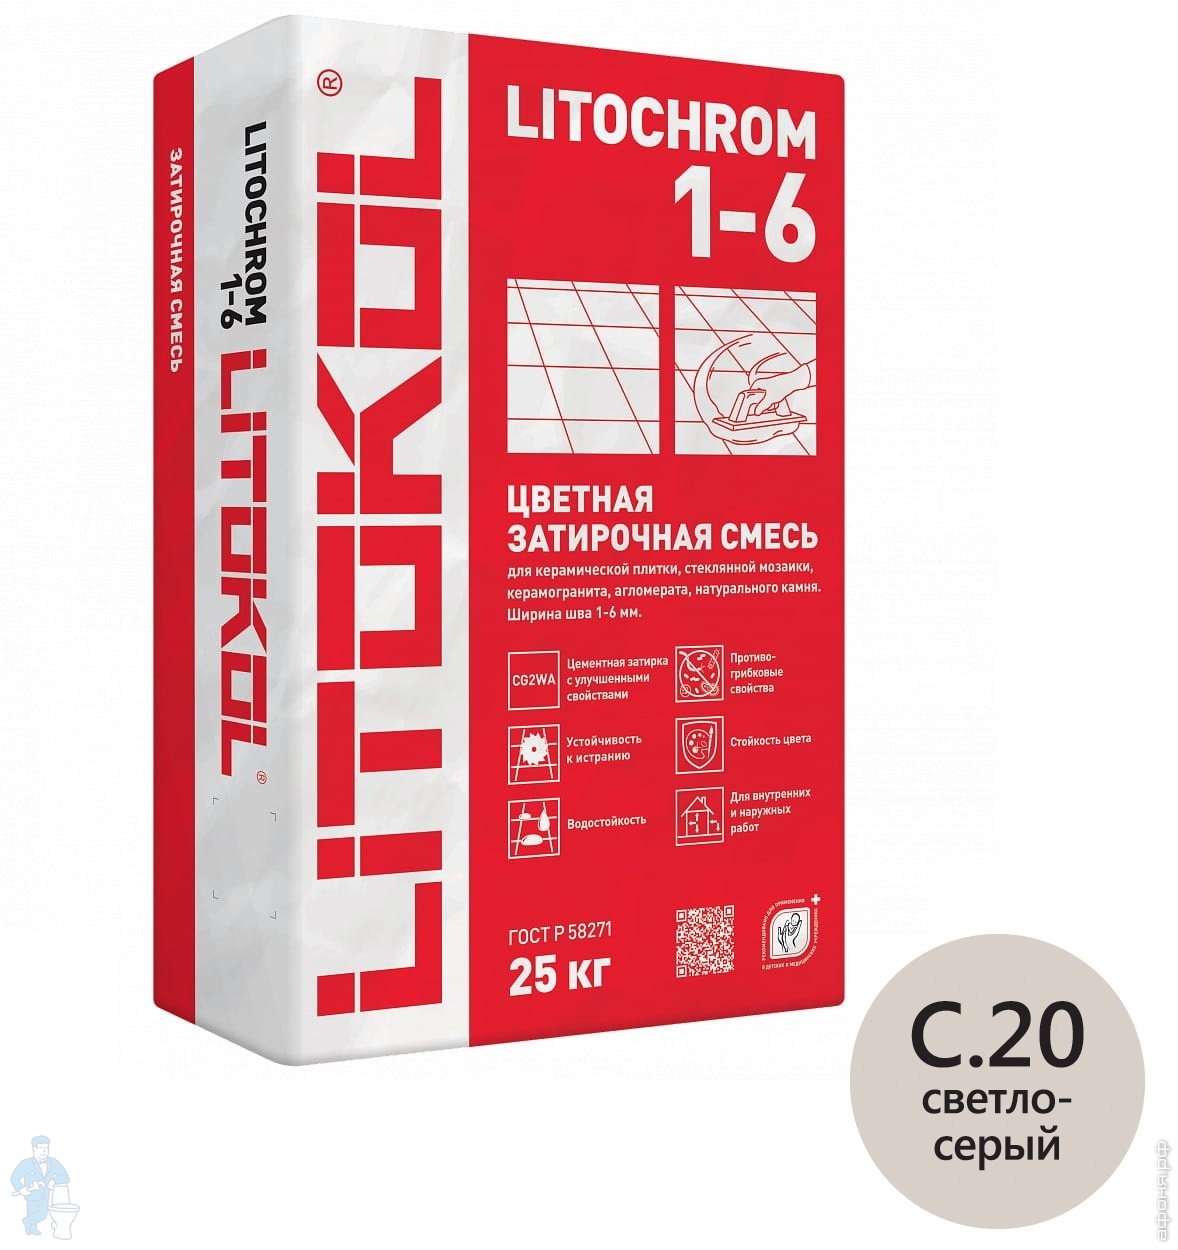  цементная LITOKOL LITOCHROM 1-6 C.20 для внутренних и наружных .